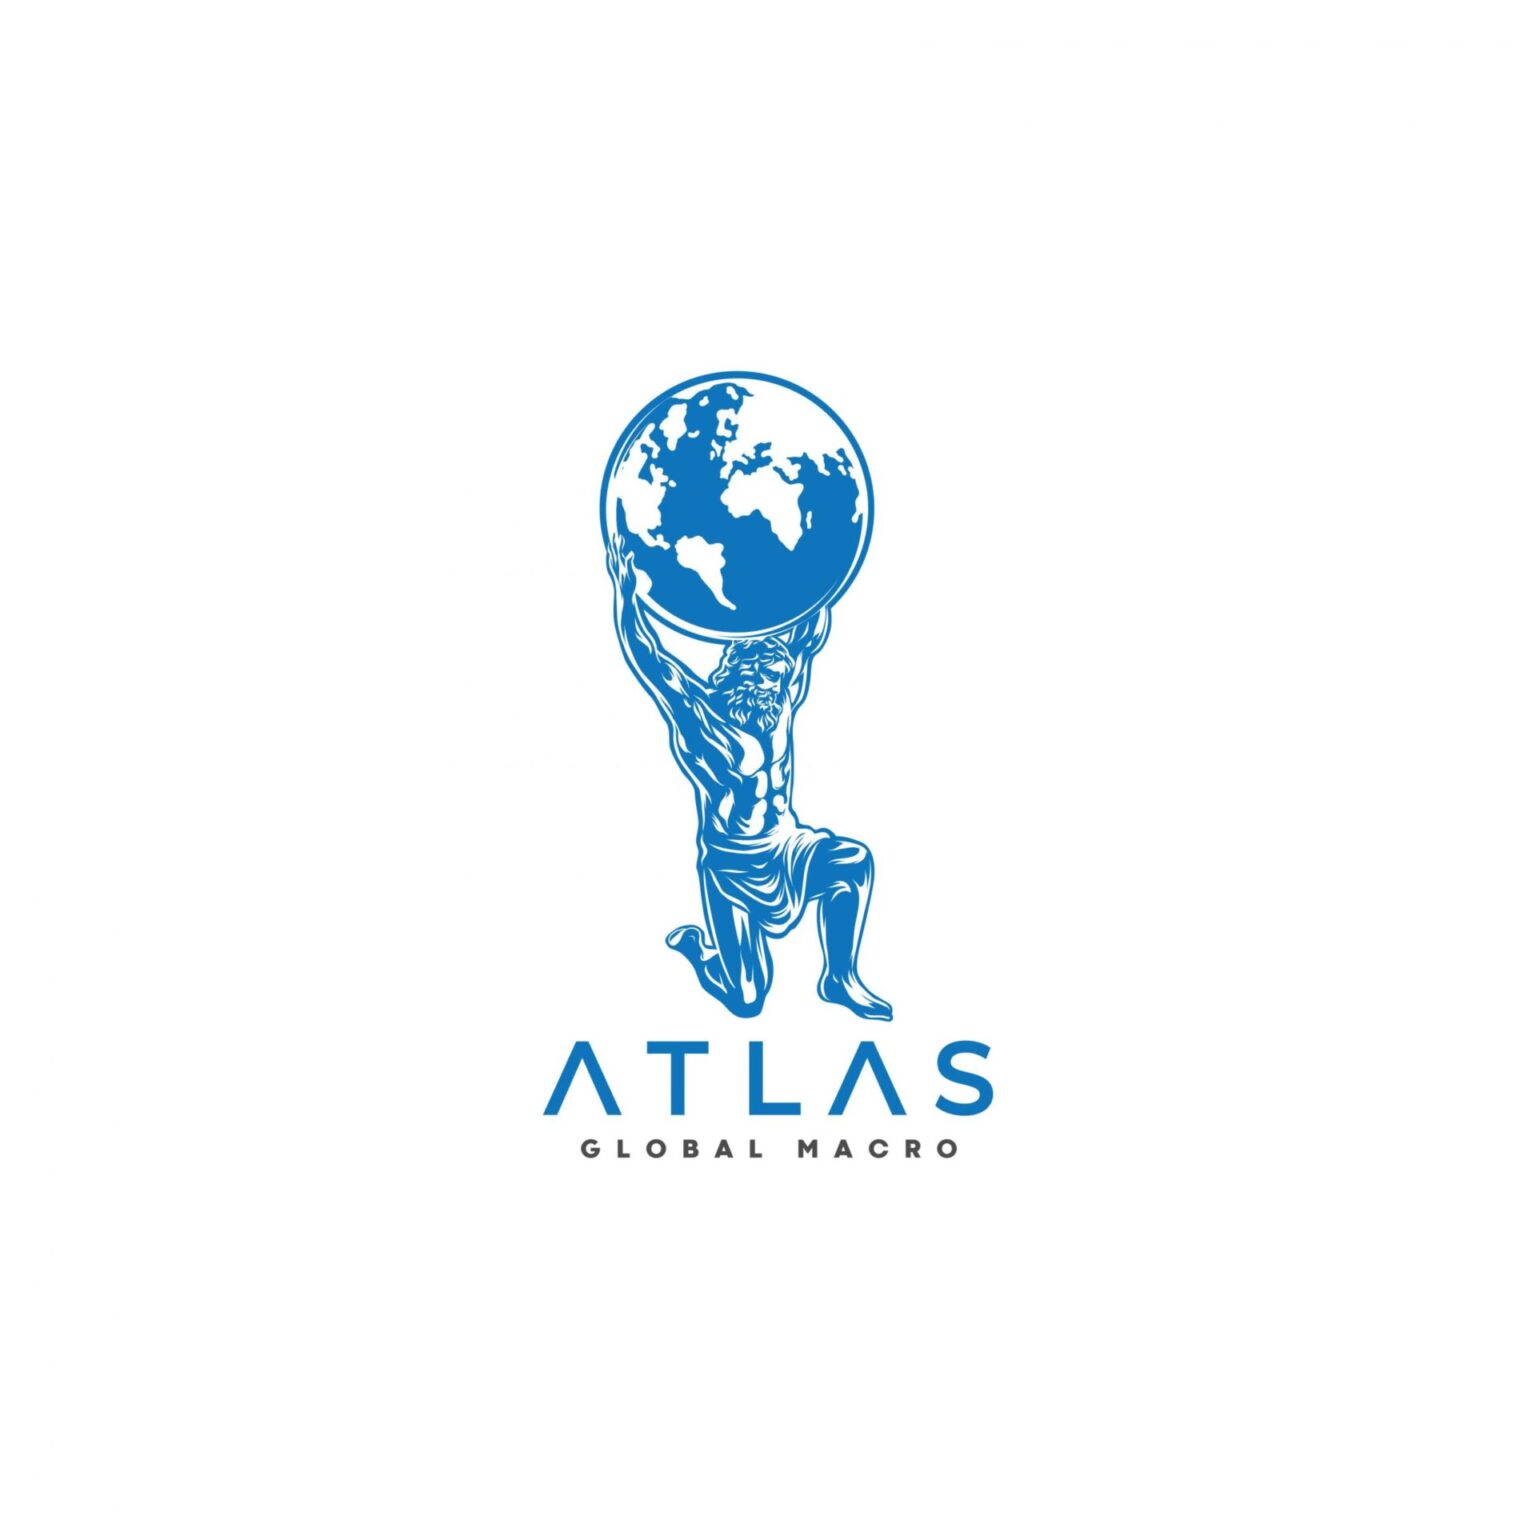 Atlas-Global-Makro-Main-Logo-JPG-002-scaled-1-1536x1536.jpg